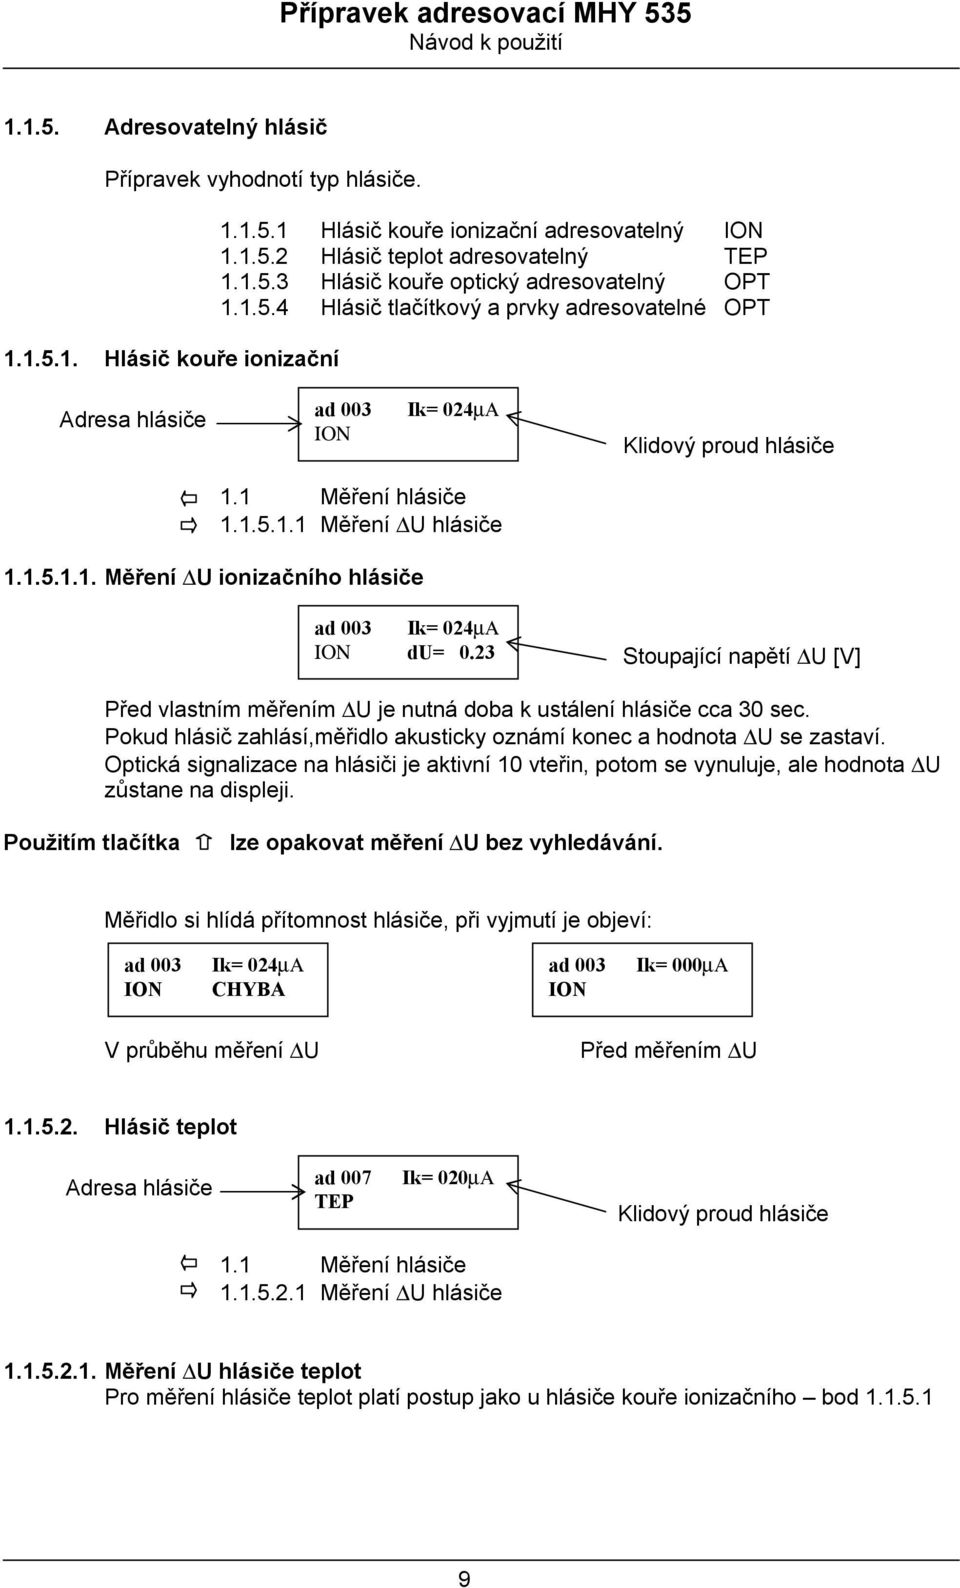 Přípravek adresovací MHY 535 Návod k použití - PDF Stažení zdarma